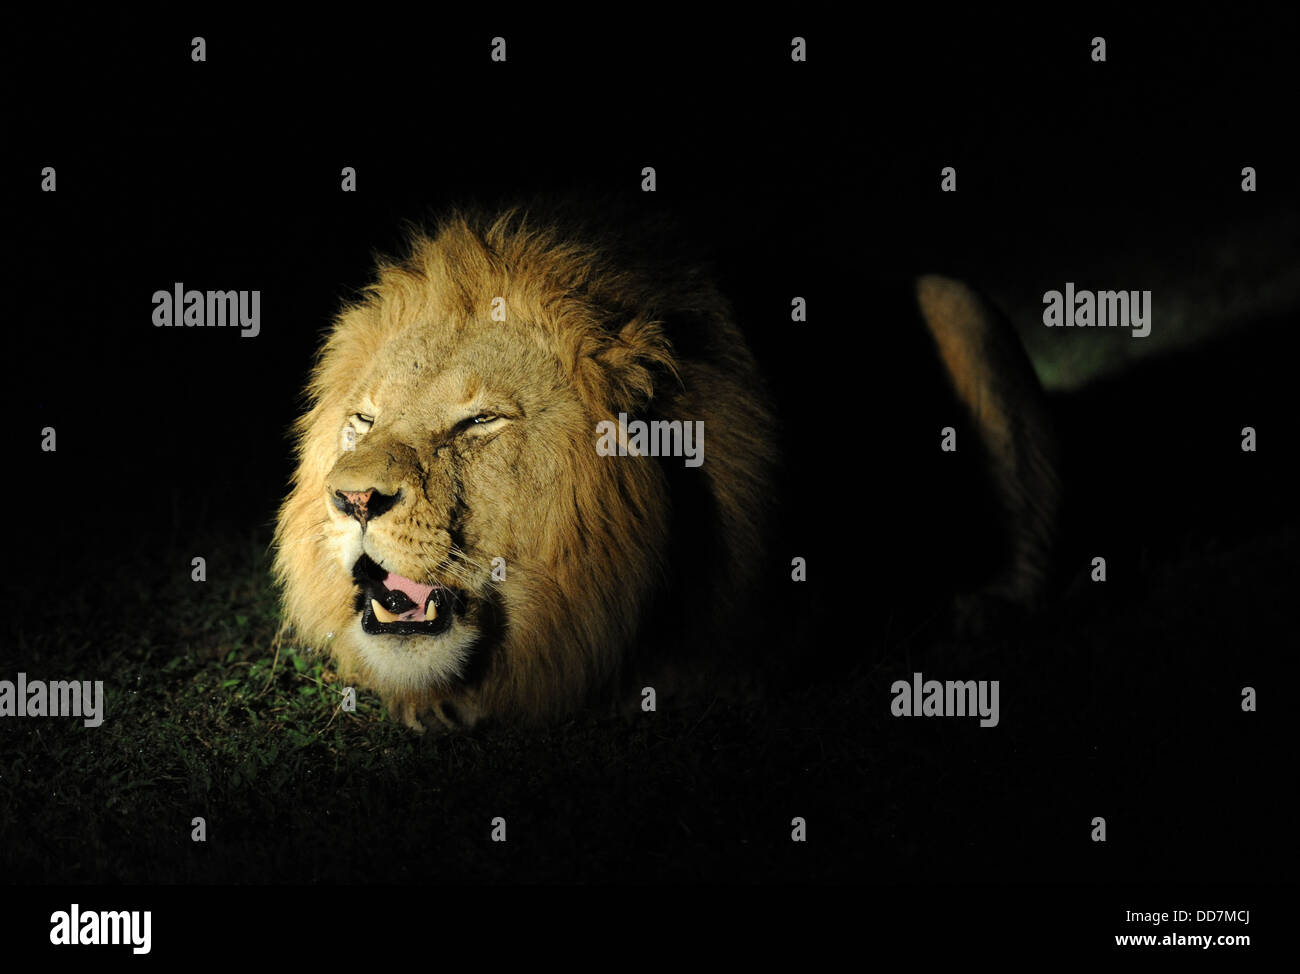 Roaring lion mâle adulte de nuit Banque D'Images